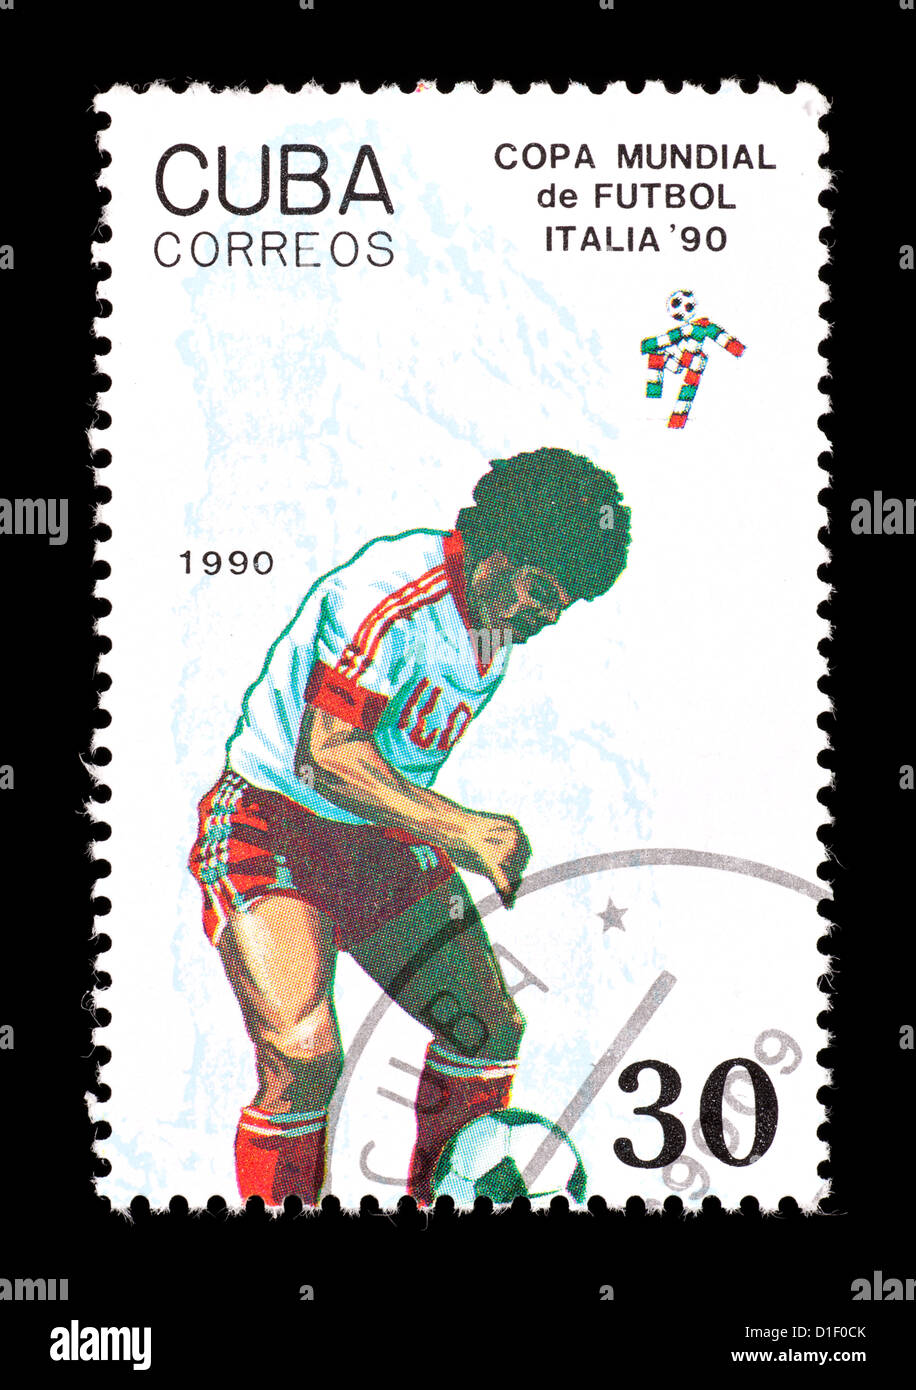 Timbre-poste de Cuba représentant un joueur de football, émis pour la Coupe du Monde 1990 en Italie. Banque D'Images